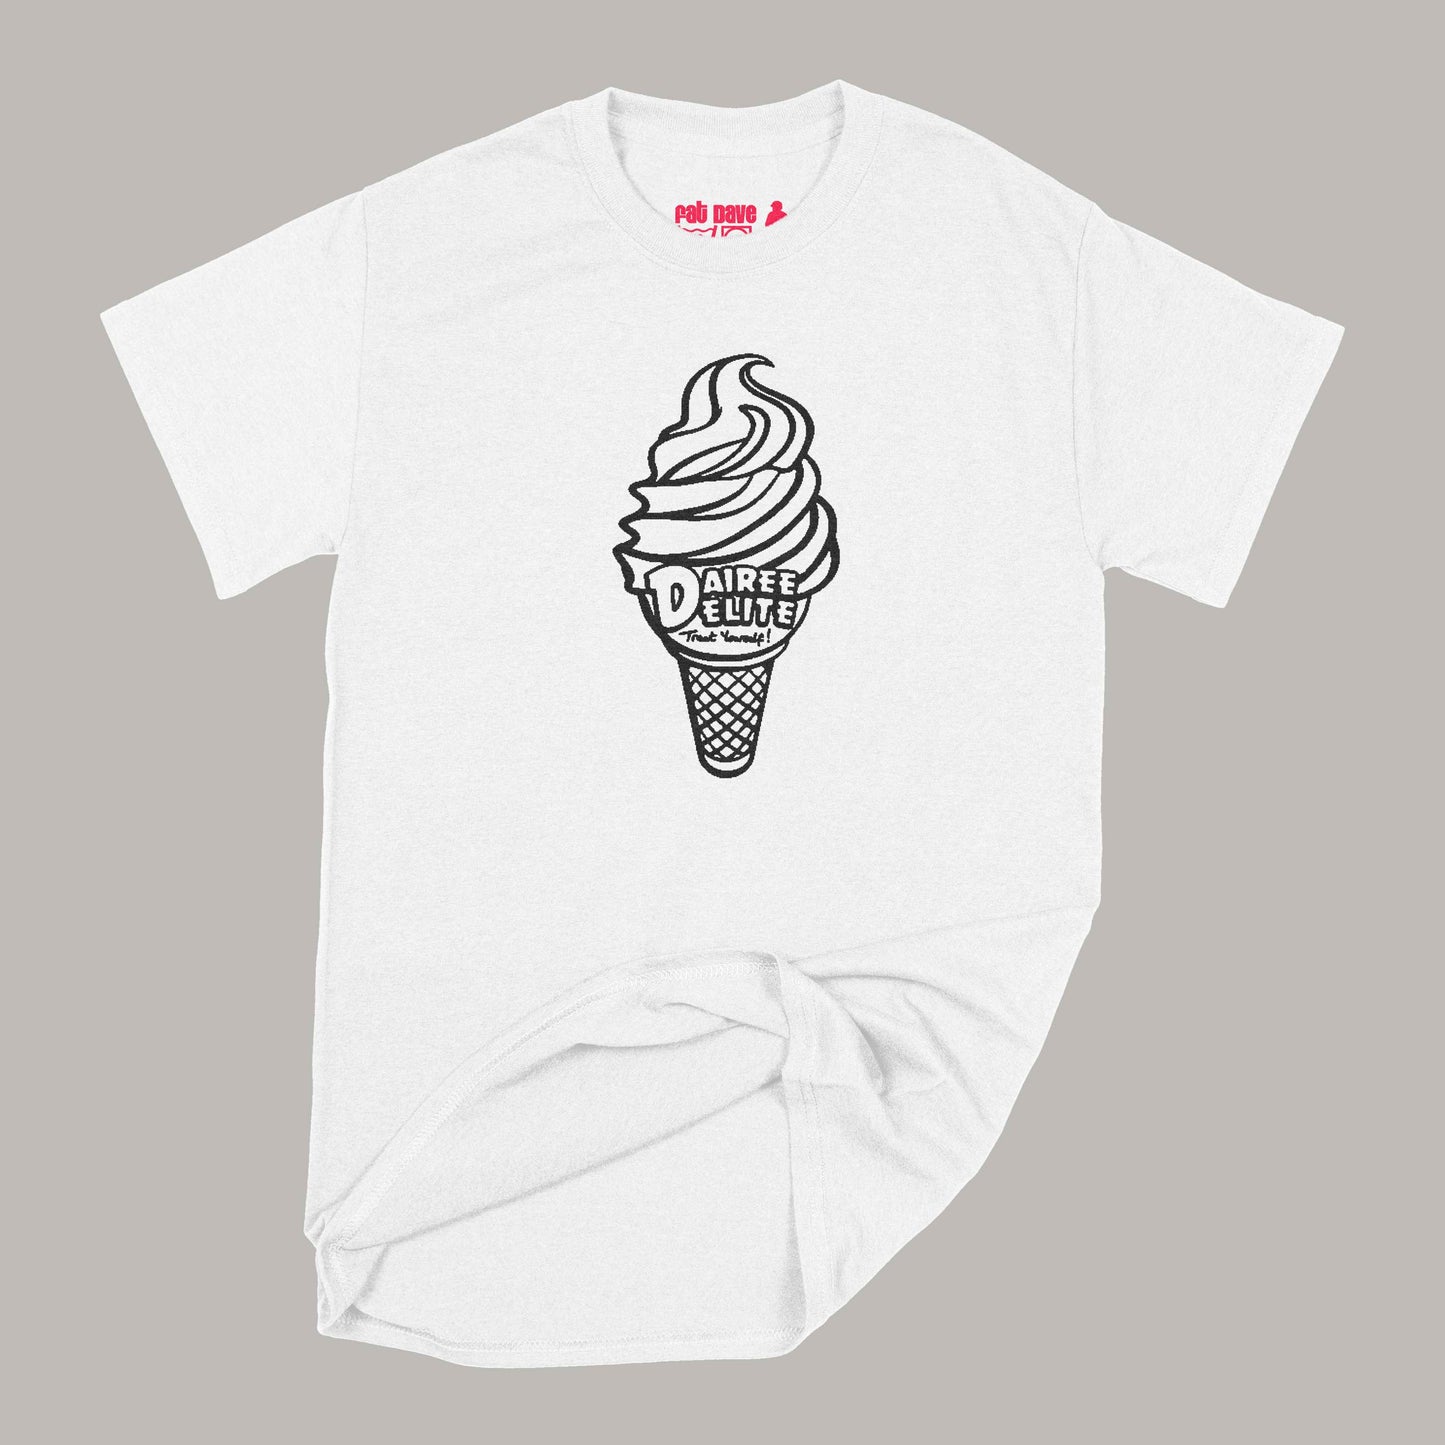 Dairee Delite 70th Anniversary Treat Yourself Cone T-Shirt Small White